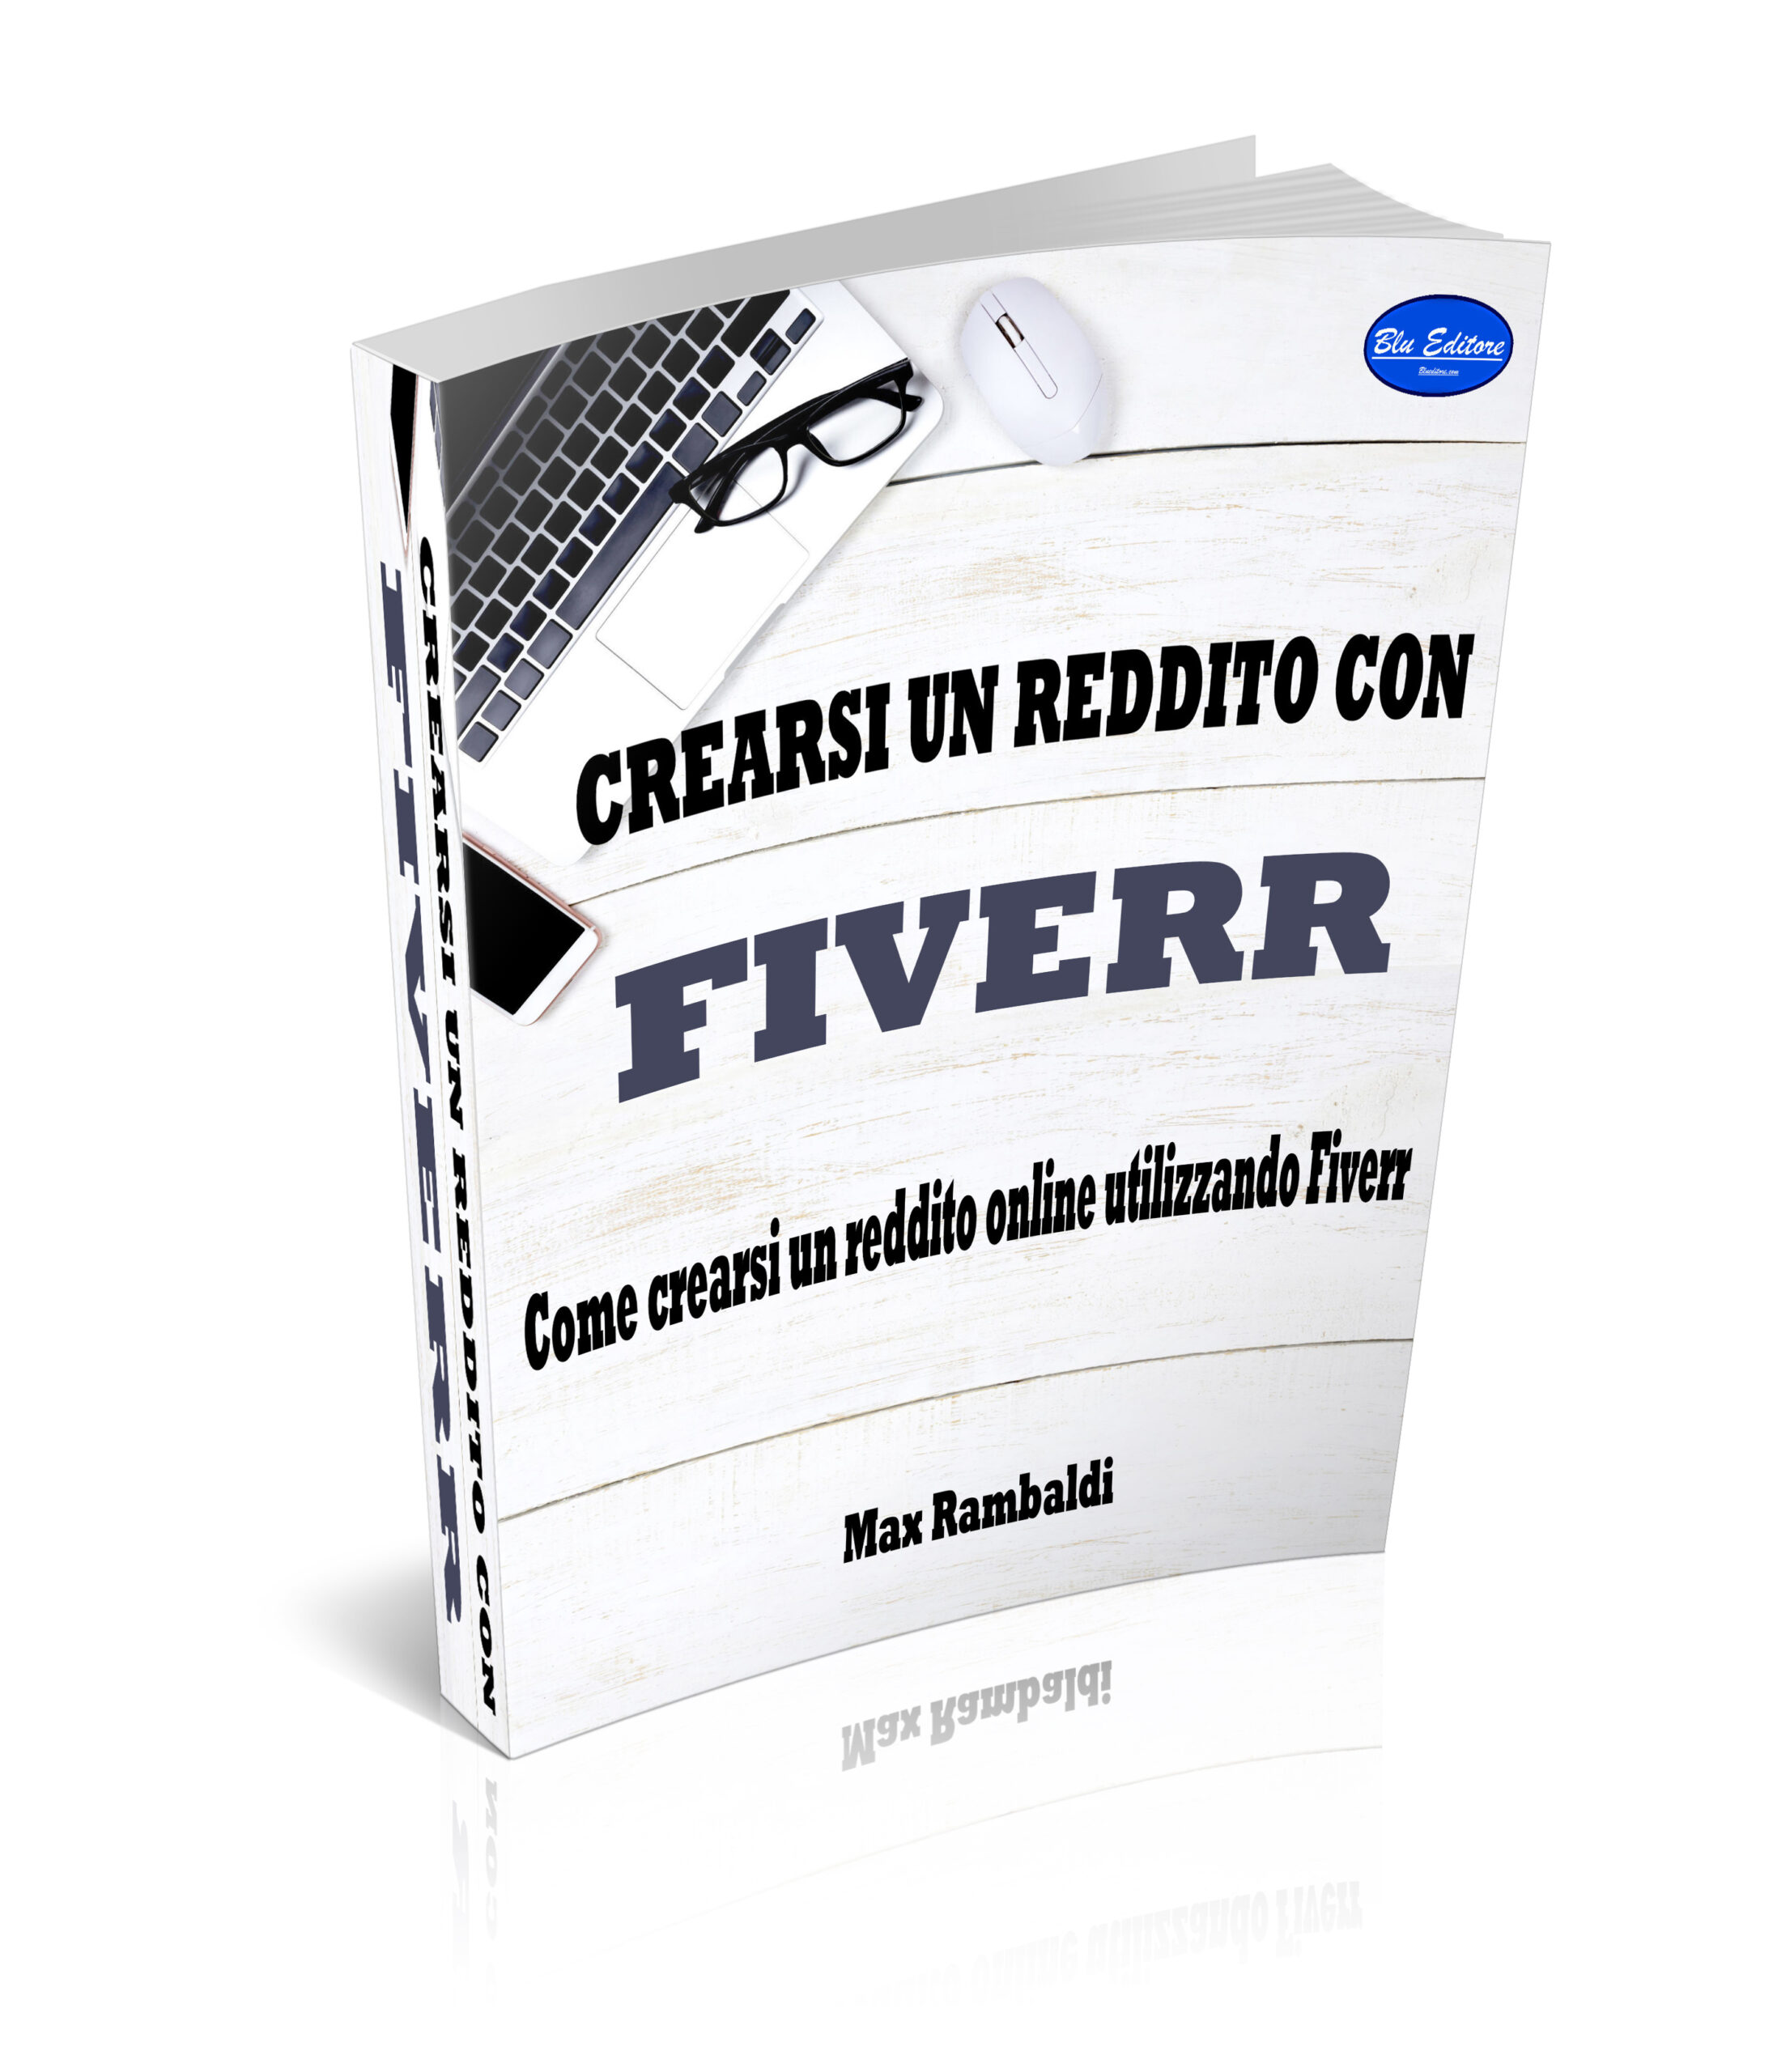 Crearsi un reddito con Fiverr